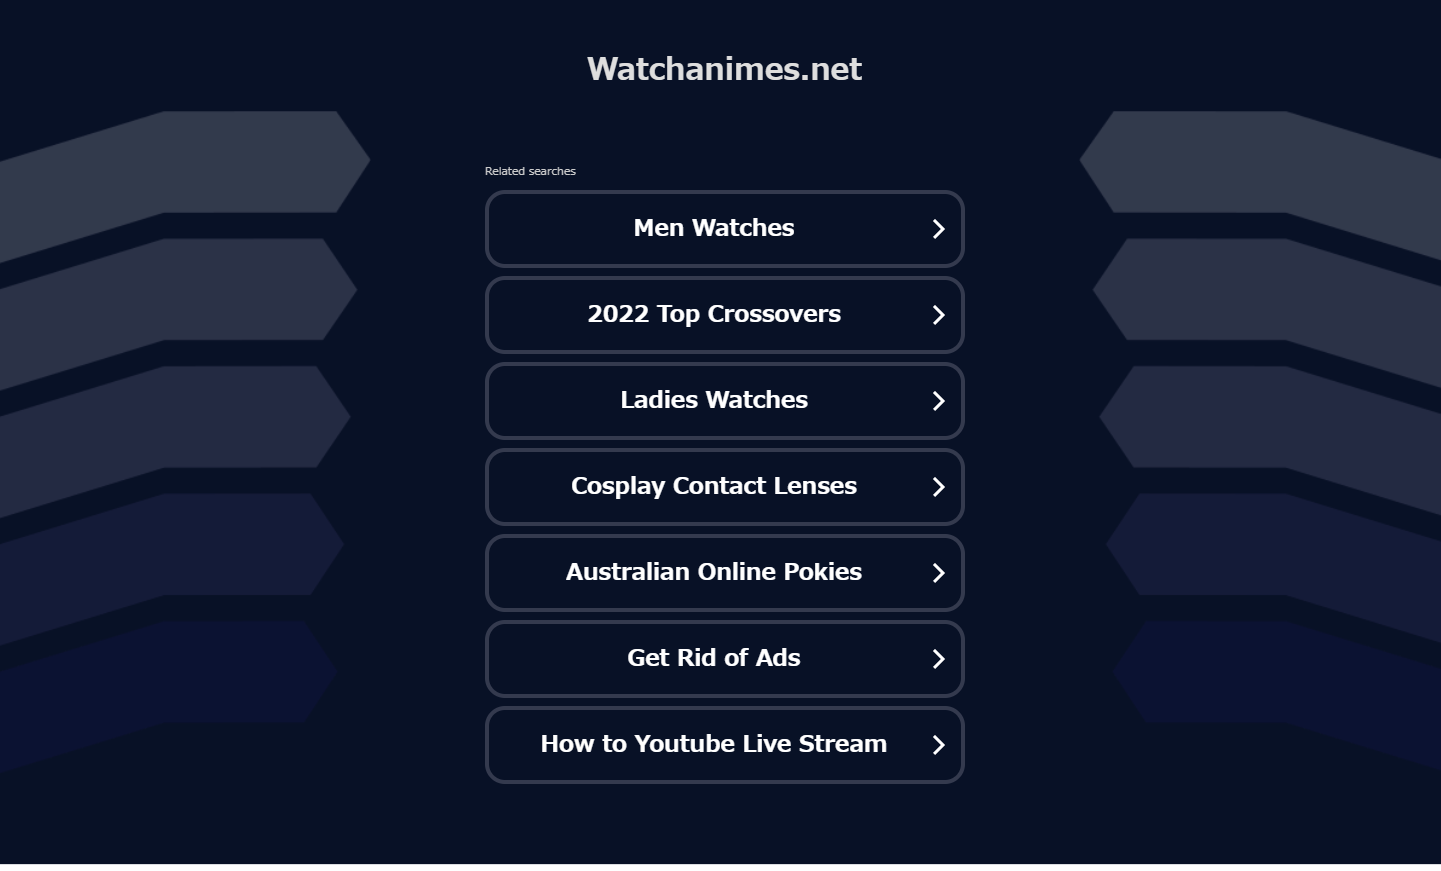 WatchAnimesは違法サイトで閉鎖された！代わりになるアニメ無料のサイト紹介